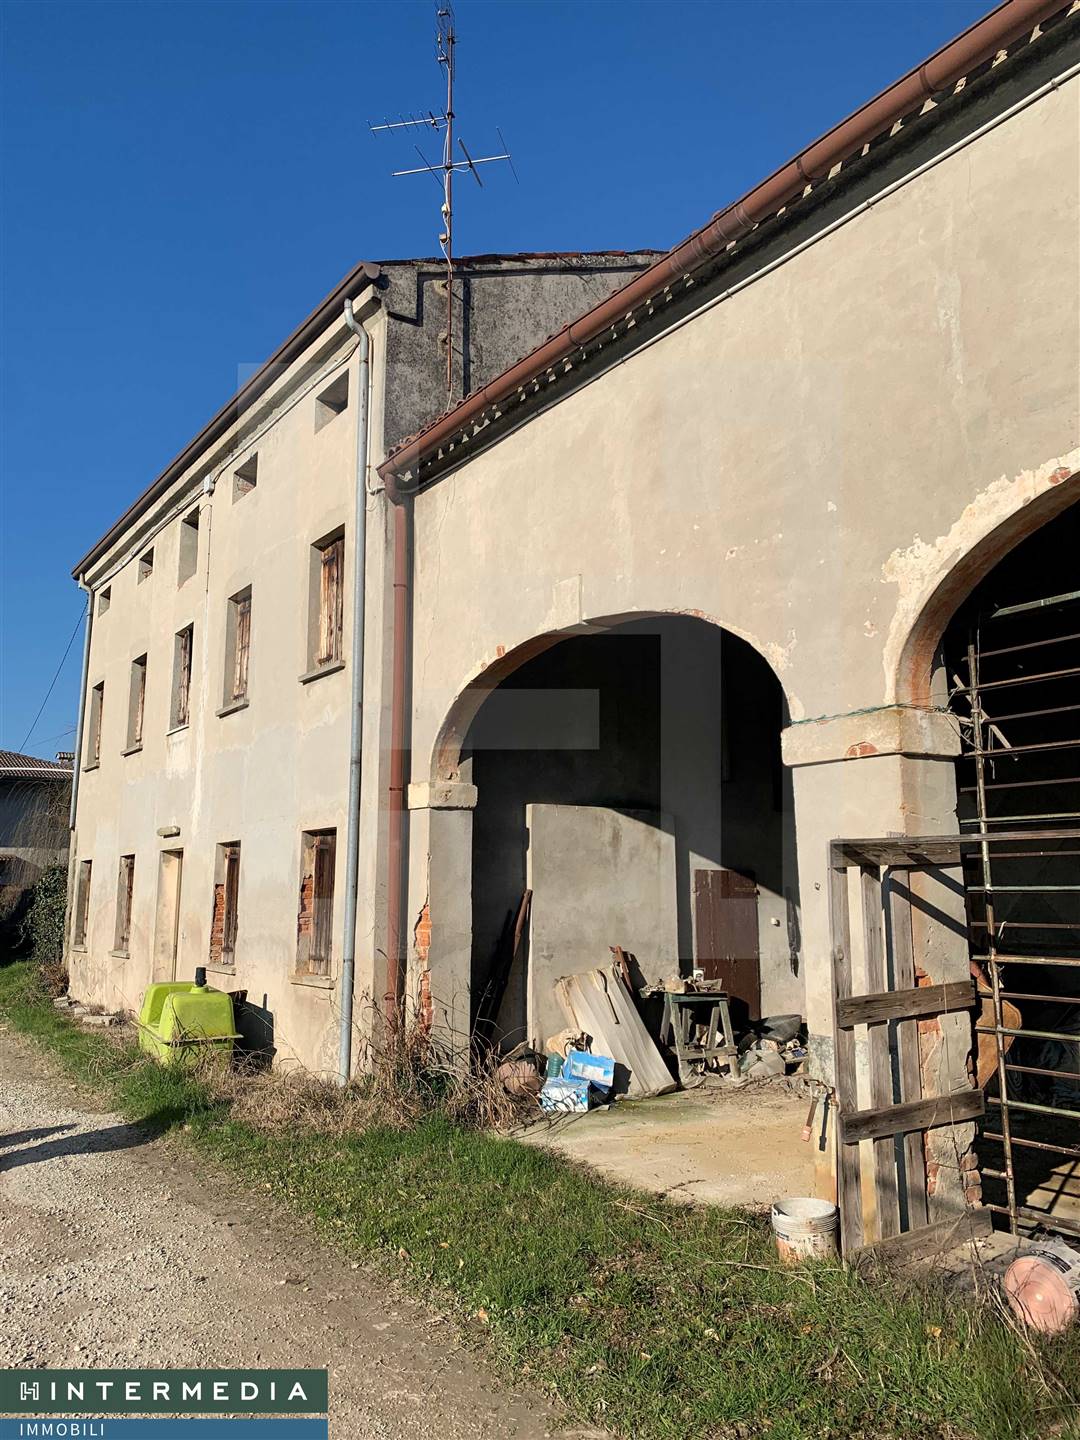 Rustico / Casale in vendita a Villafranca Padovana, 10 locali, prezzo € 80.000 | PortaleAgenzieImmobiliari.it